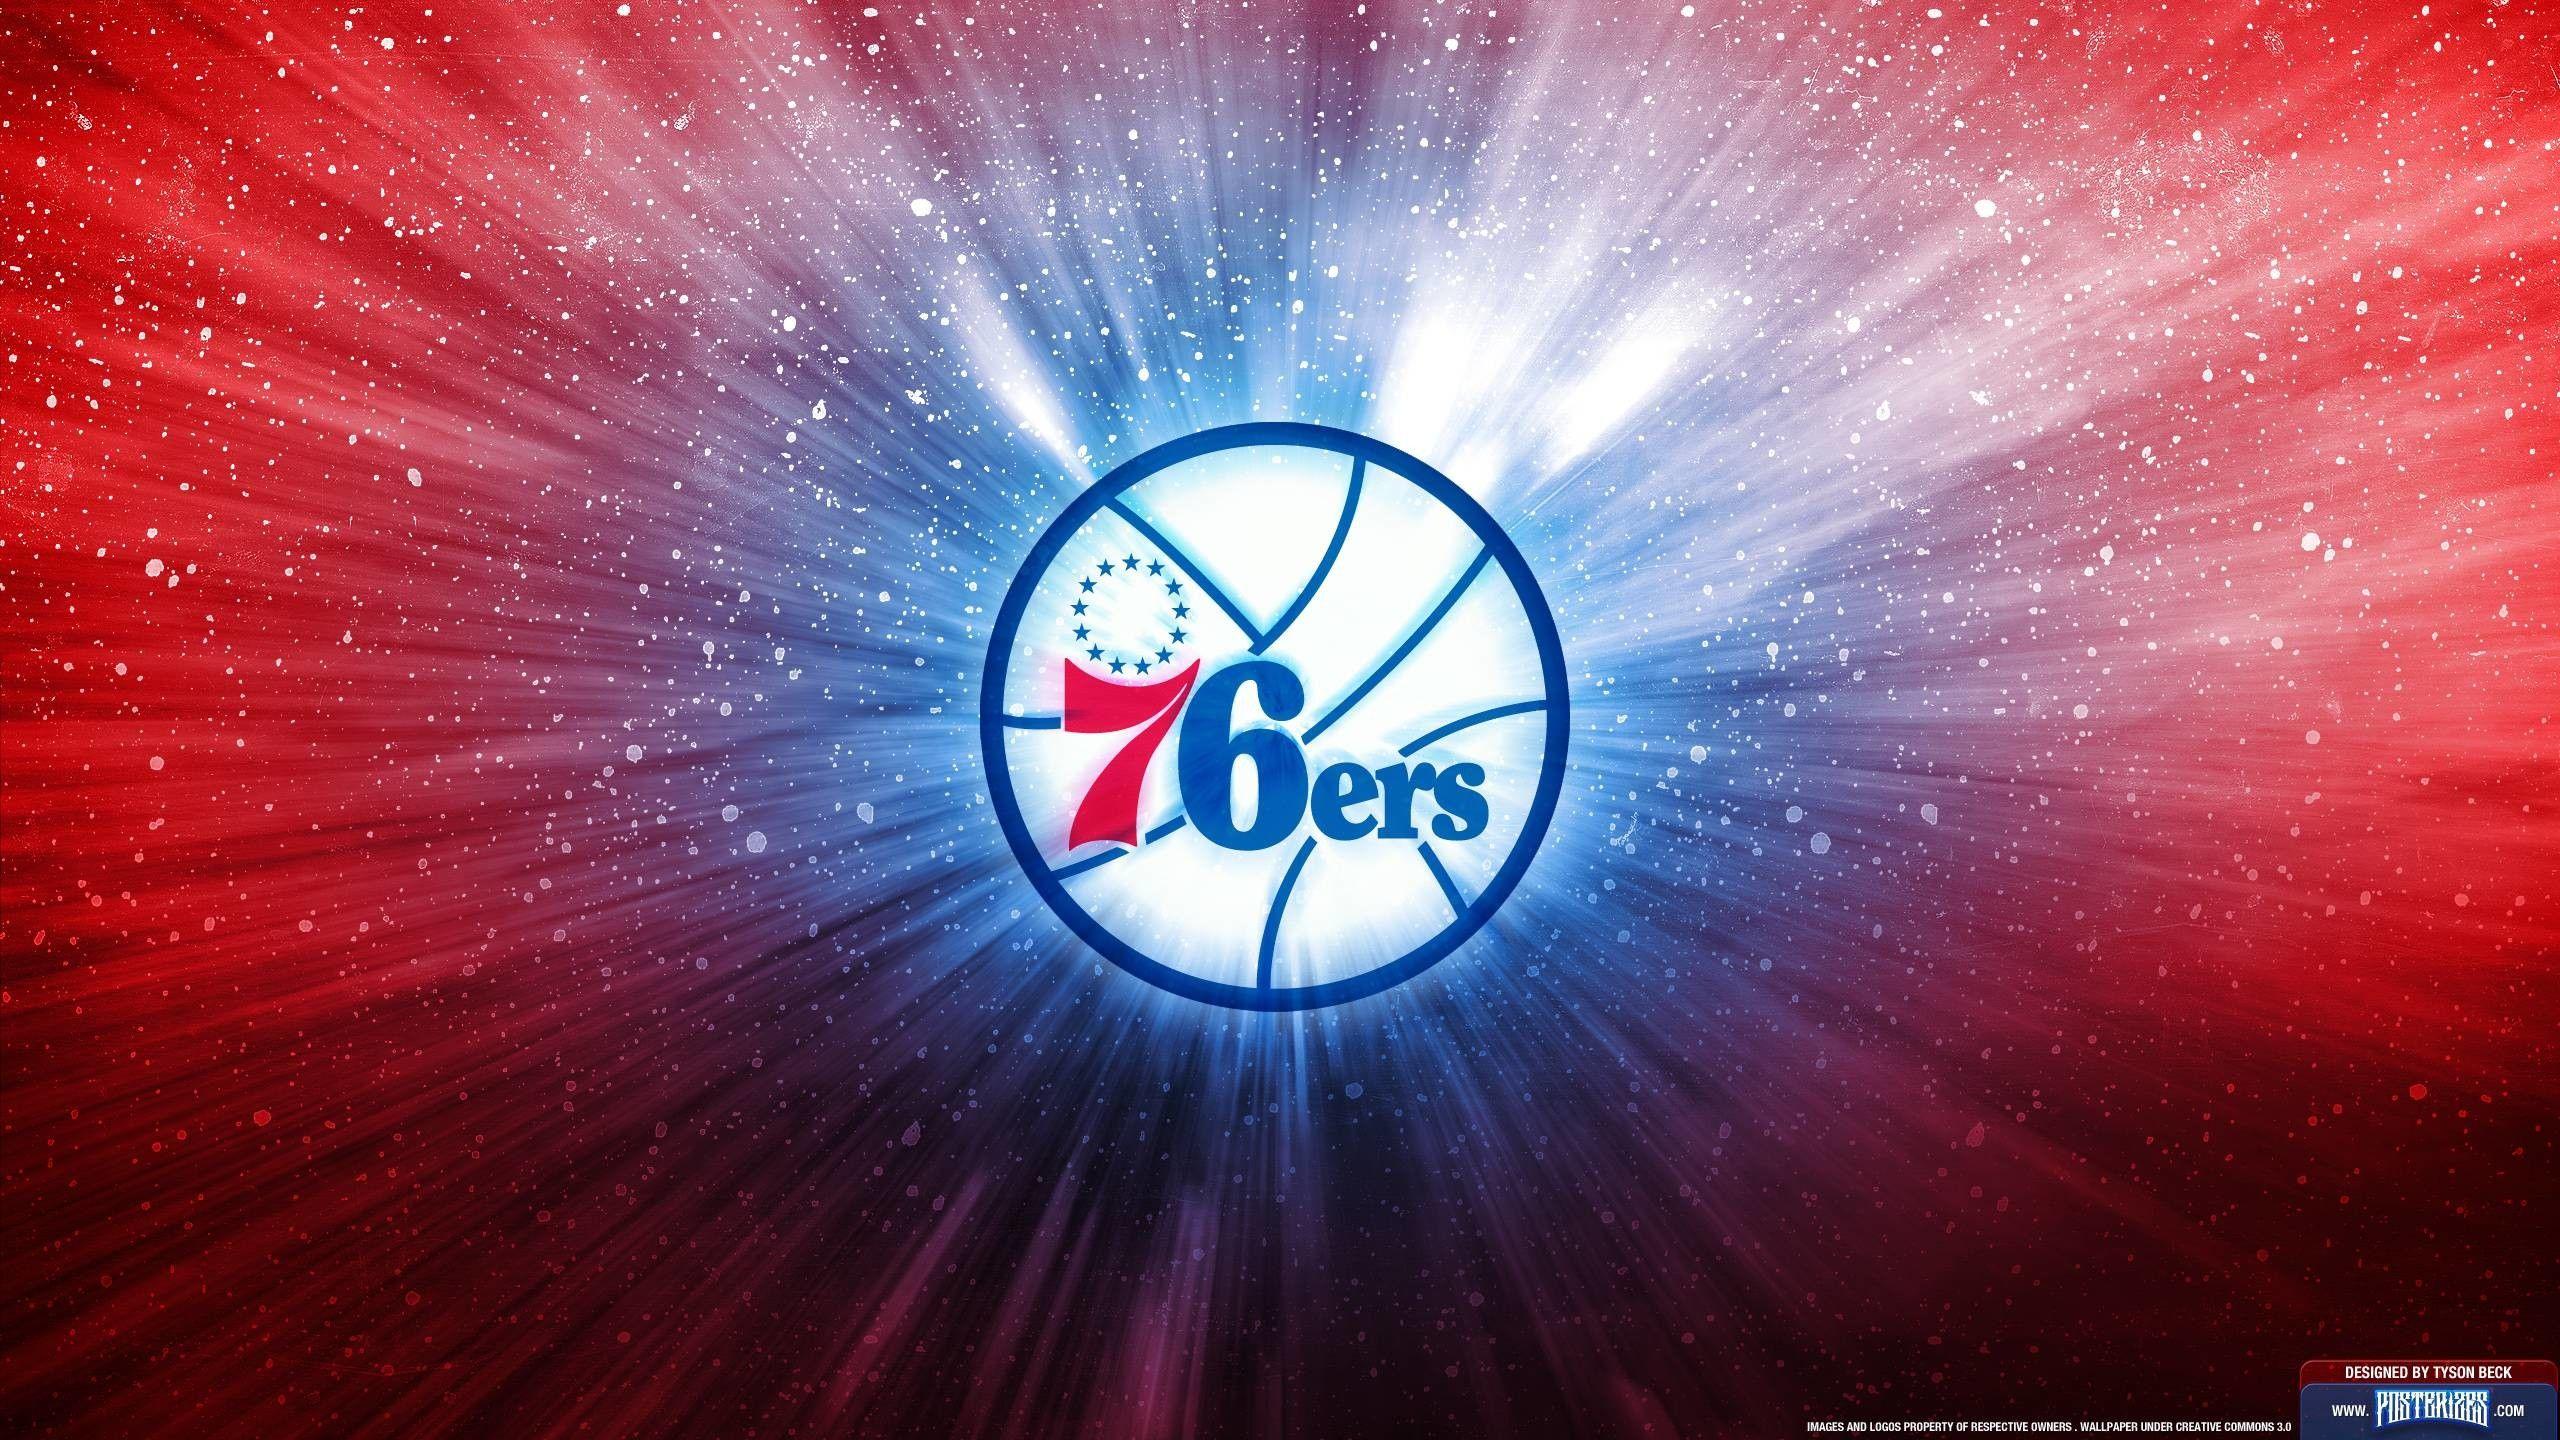 Philadelphia 76ers Wallpaper For Mac Backgrounds  2023 Basketball Wallpaper   Philadelphia 76ers 76ers Basketball wallpaper